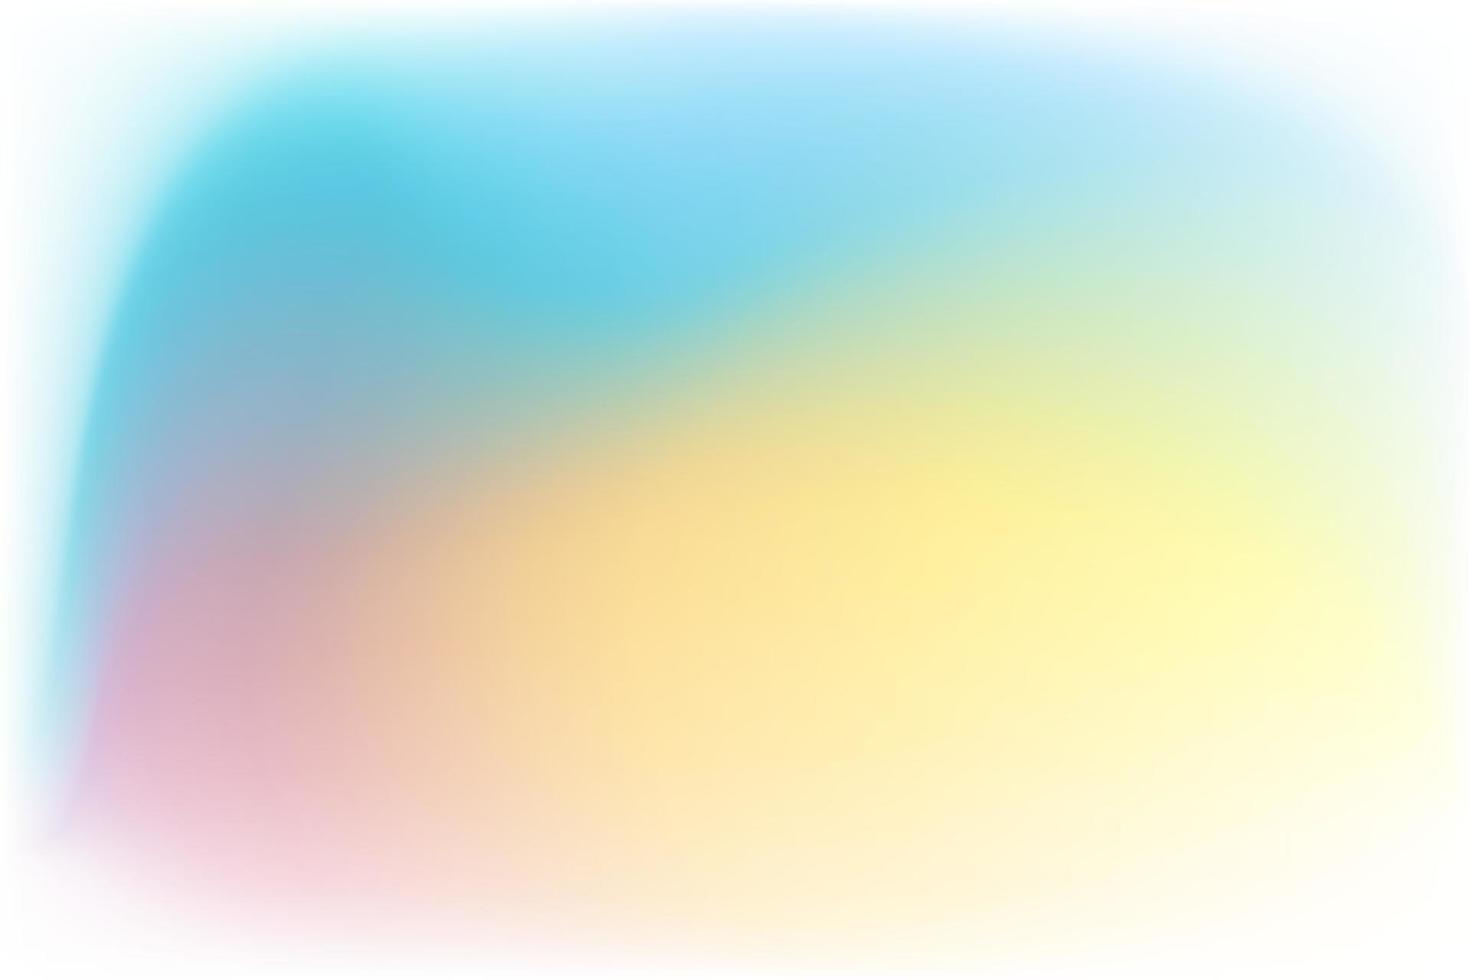 de mesh kleurverloop achtergrond vector